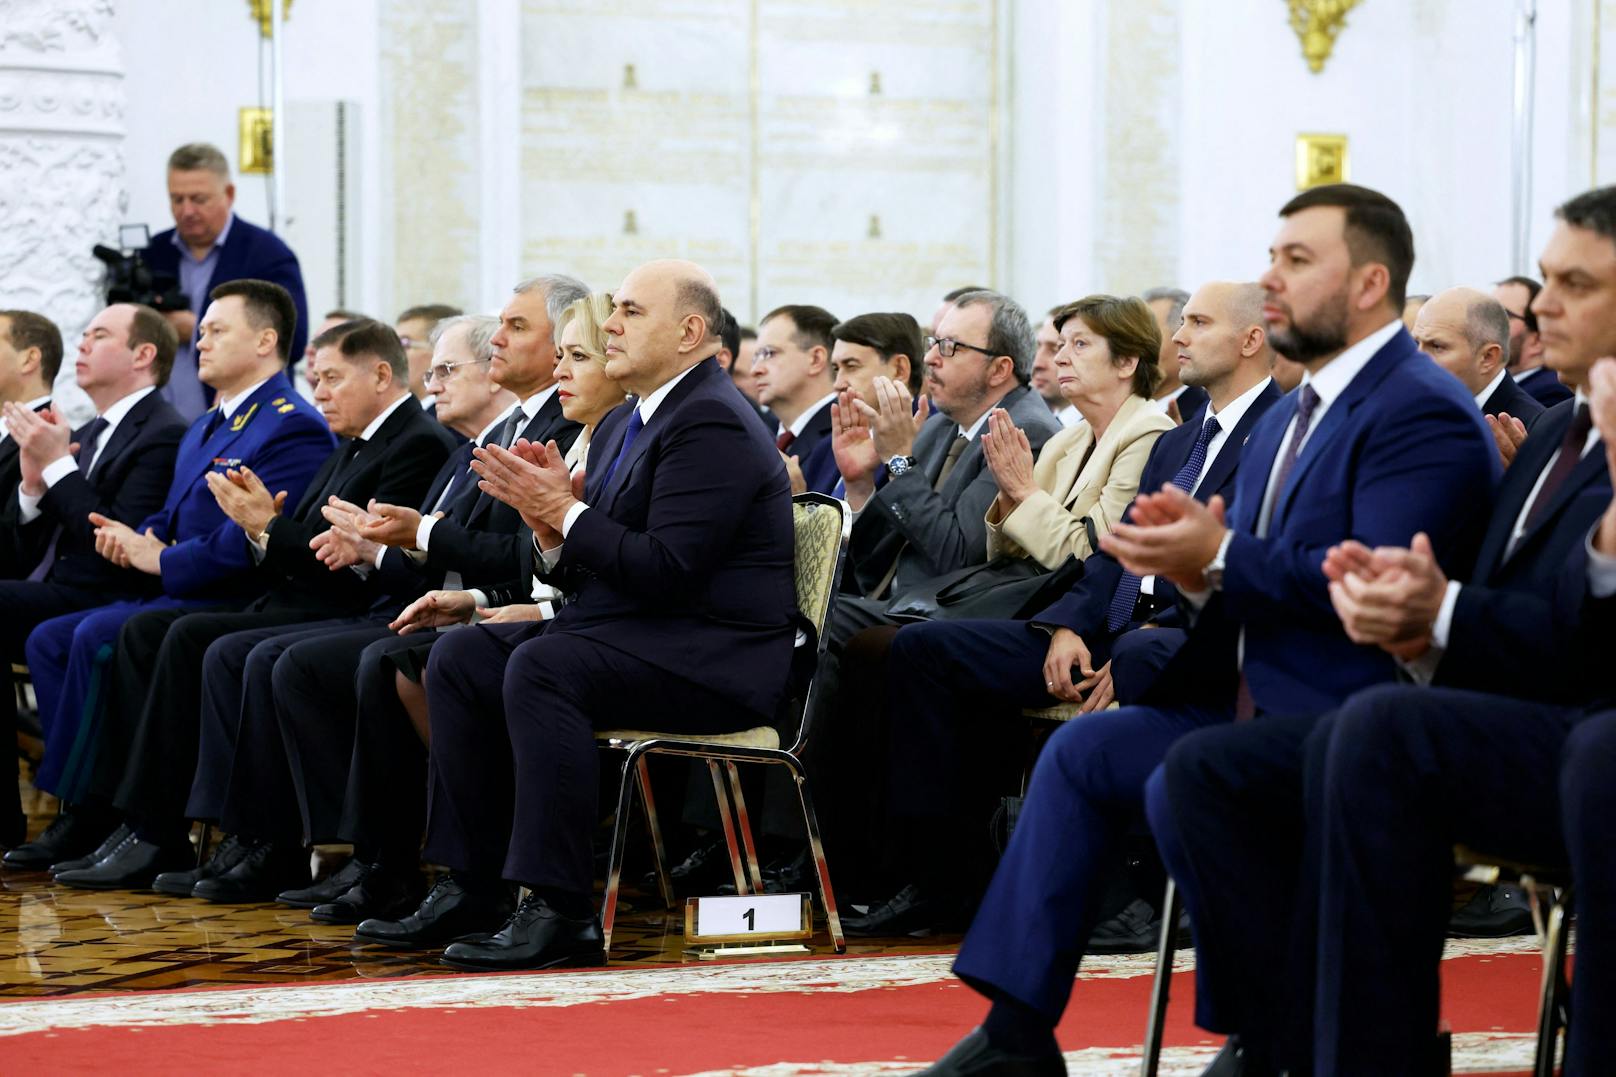 Der russische Ministerpräsident Michail Mischustin und andere Teilnehmer nehmen an einer Zeremonie teil.